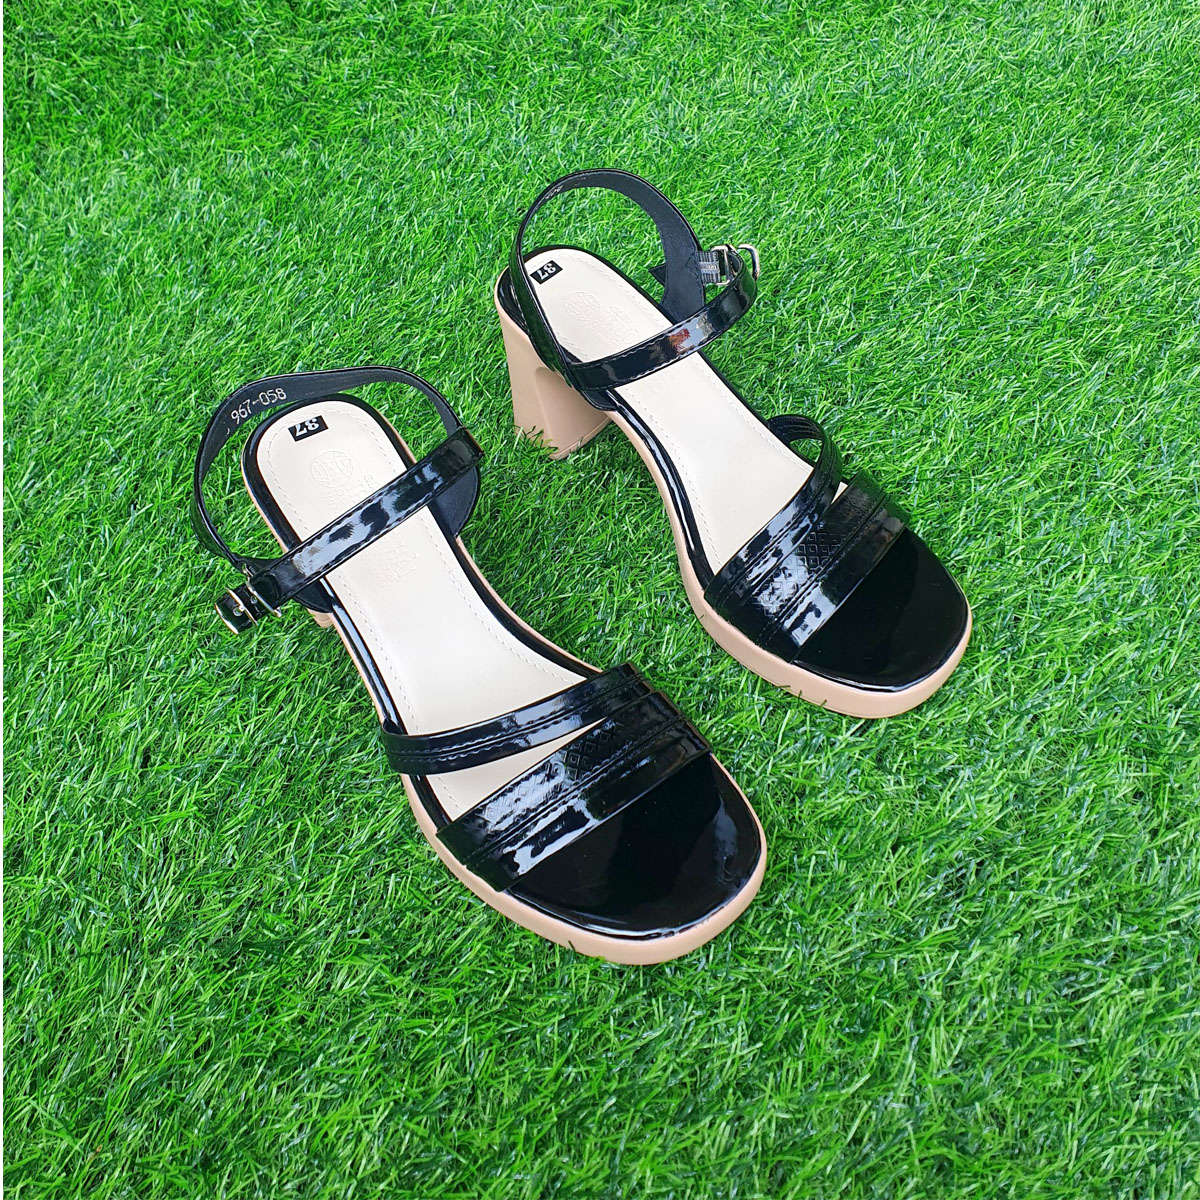 Giày Sandal nữ  cao gót 8cm Trường Hải  da bóng 2 màu đen,nâu đế PU nhẹ Xd145Đ